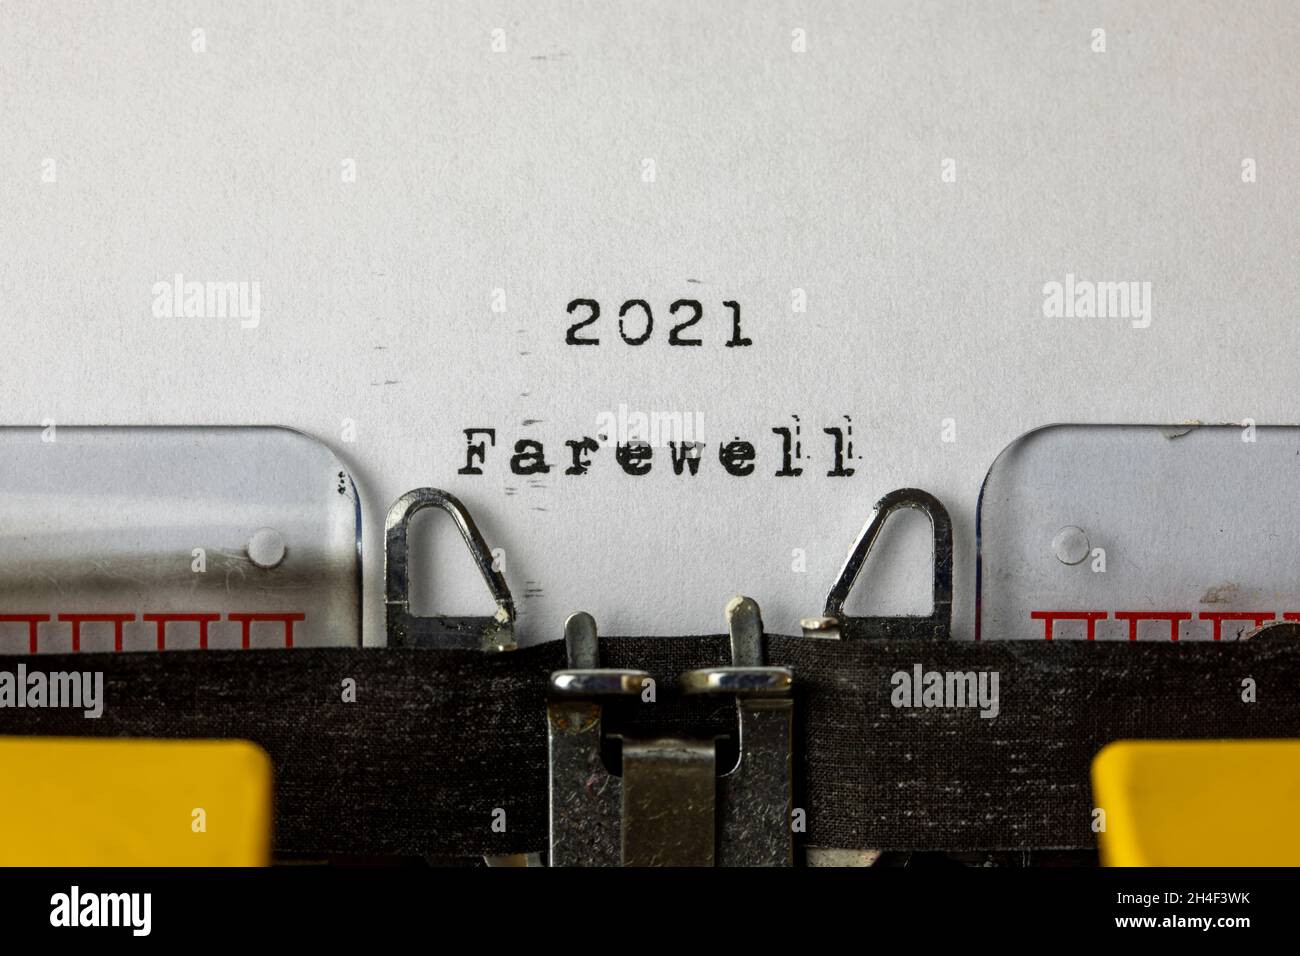 Adieu 2021 écrit sur une vieille machine à écrire Banque D'Images